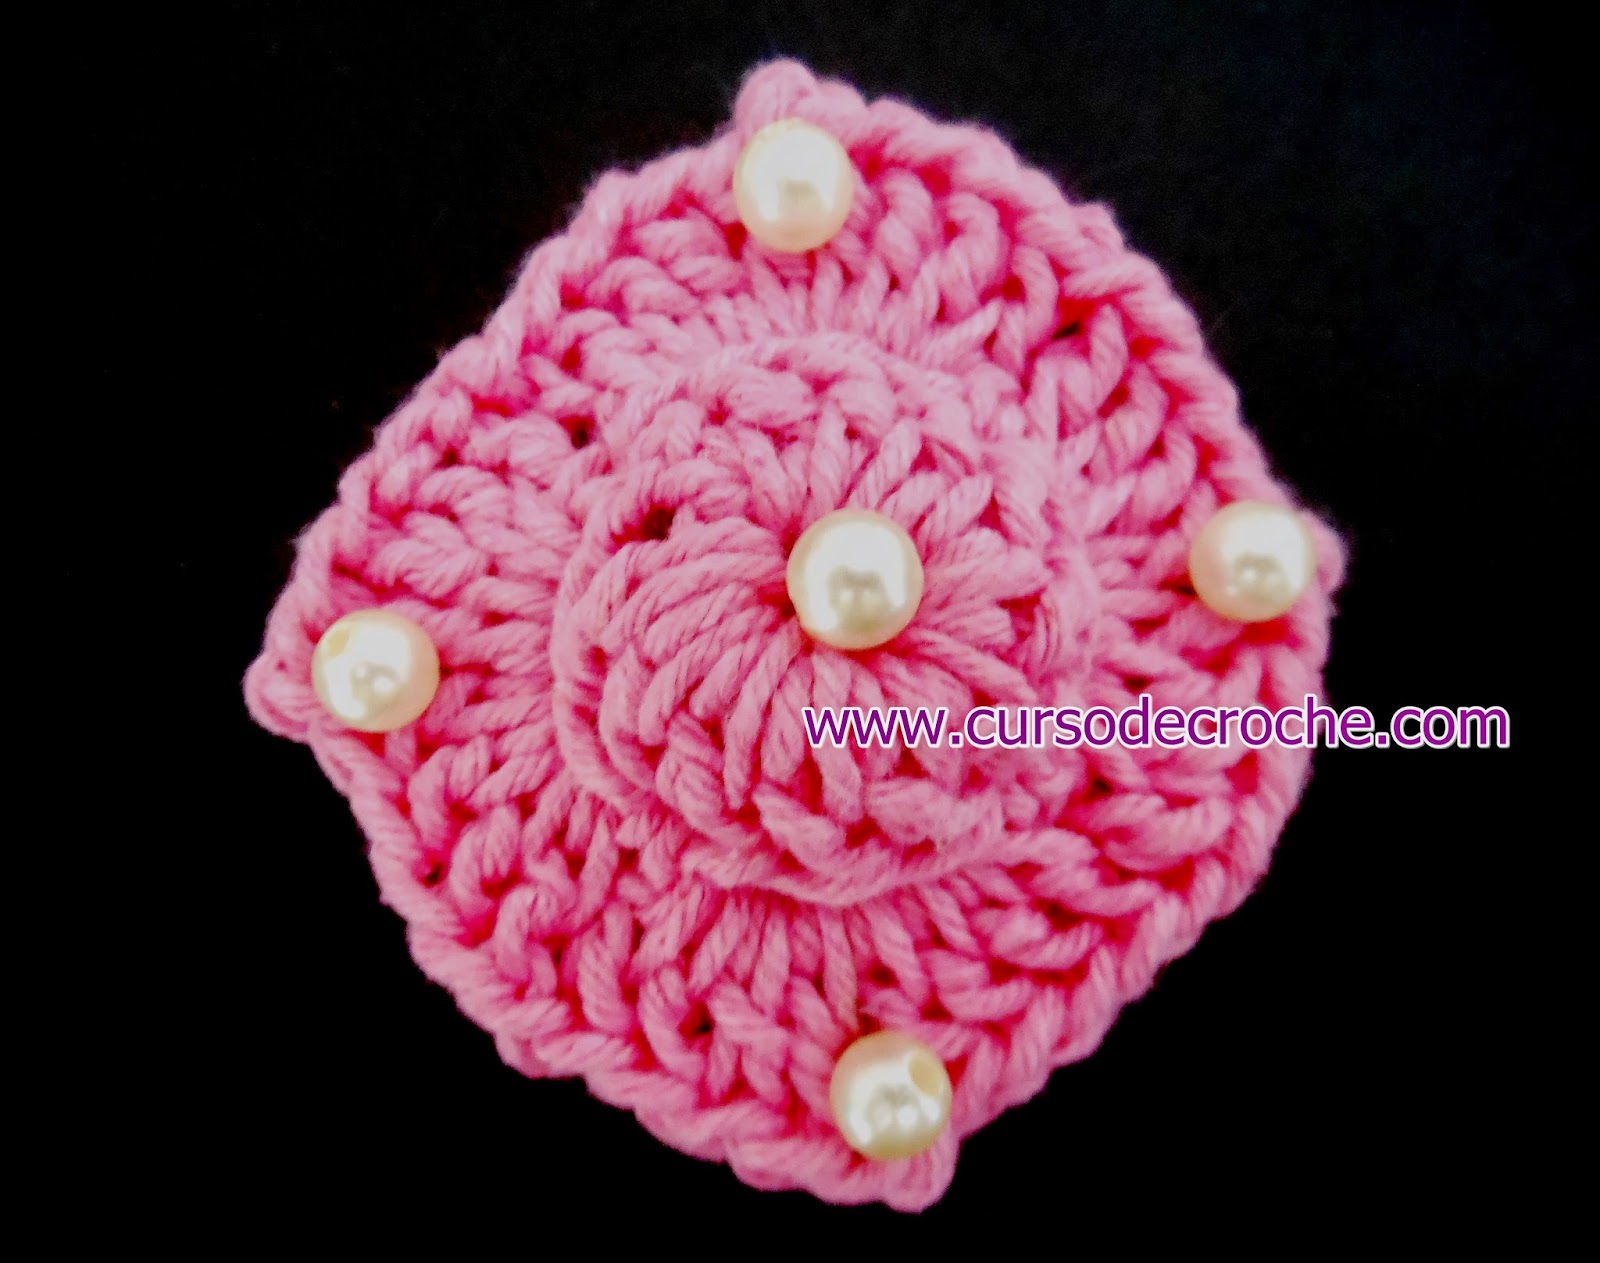 dvd em croche flores coleção aprender croche com edinir-croche na loja curso de croche com frete gratis